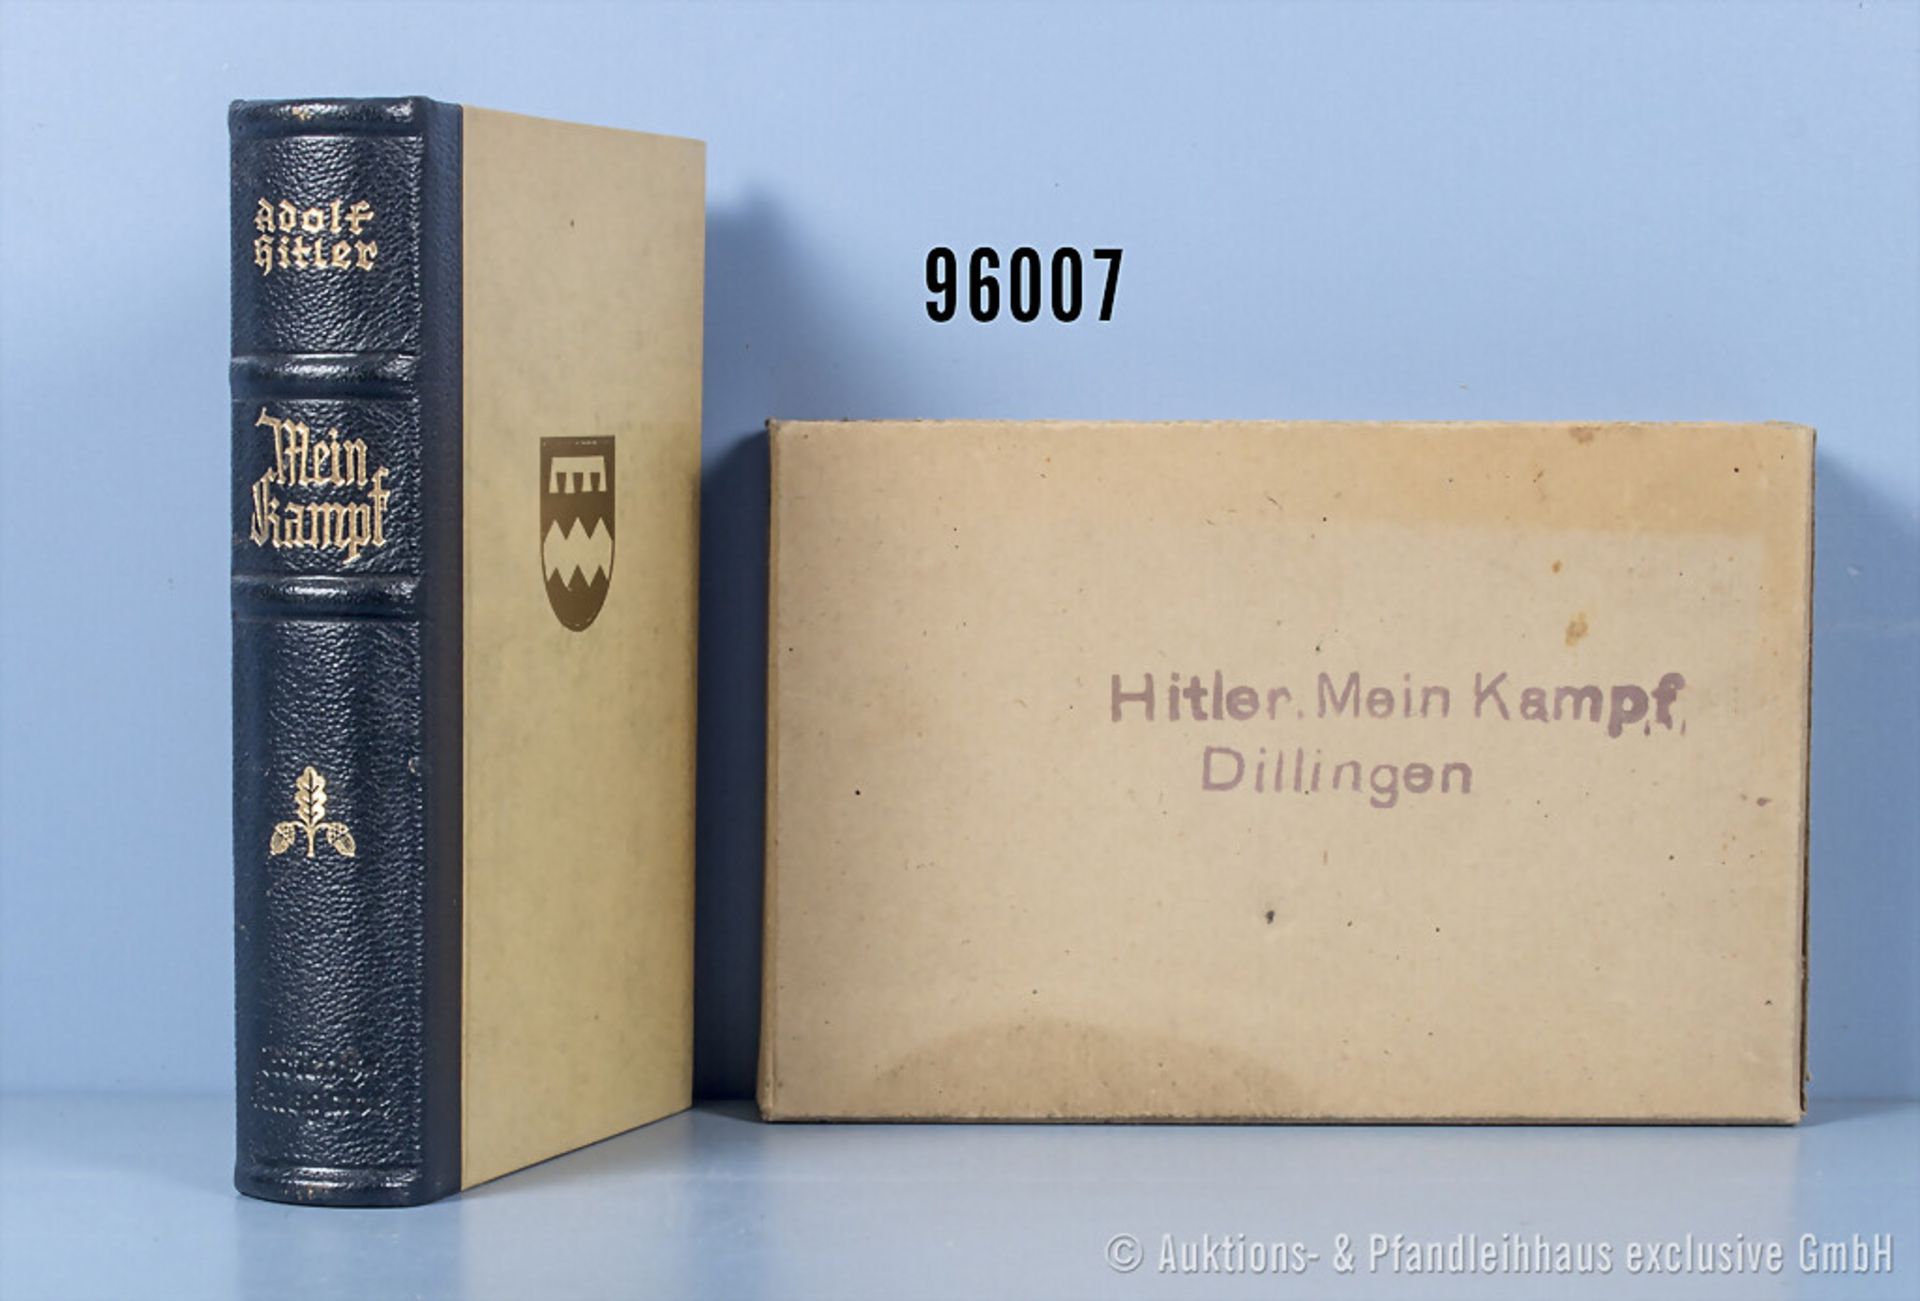 Adolf Hitler "Mein Kampf", Halblederausf., von 1942, Hochzeitsausgabe der Gemeinde ...